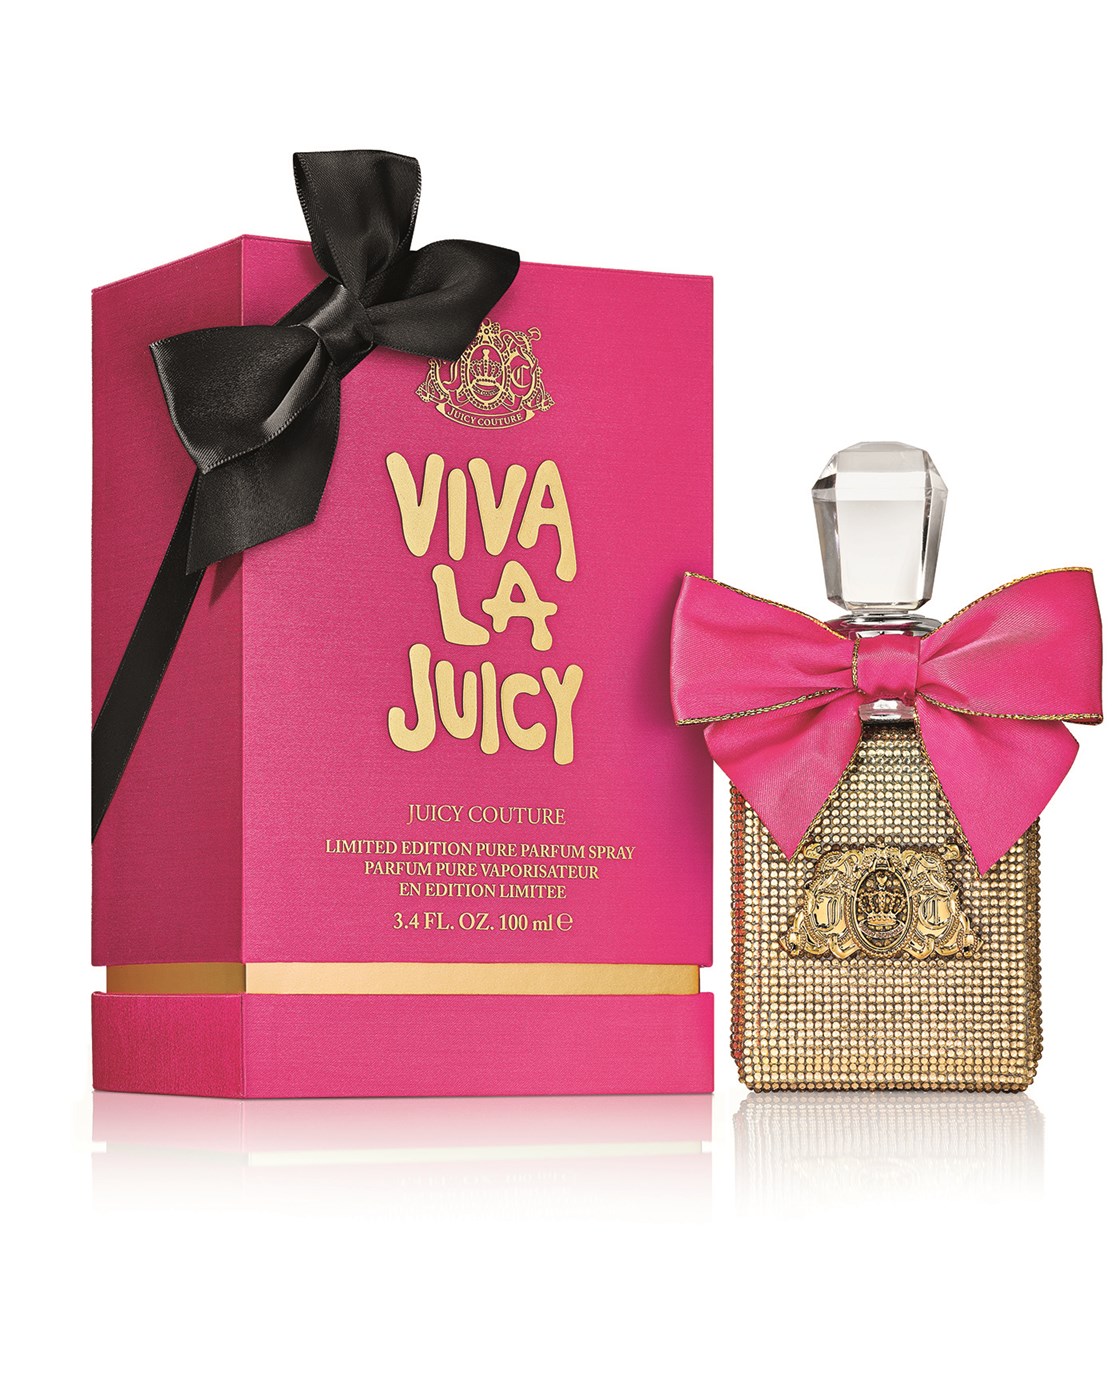 Juicy Couture Viva La Gold 3.4 oz Pure Parfum